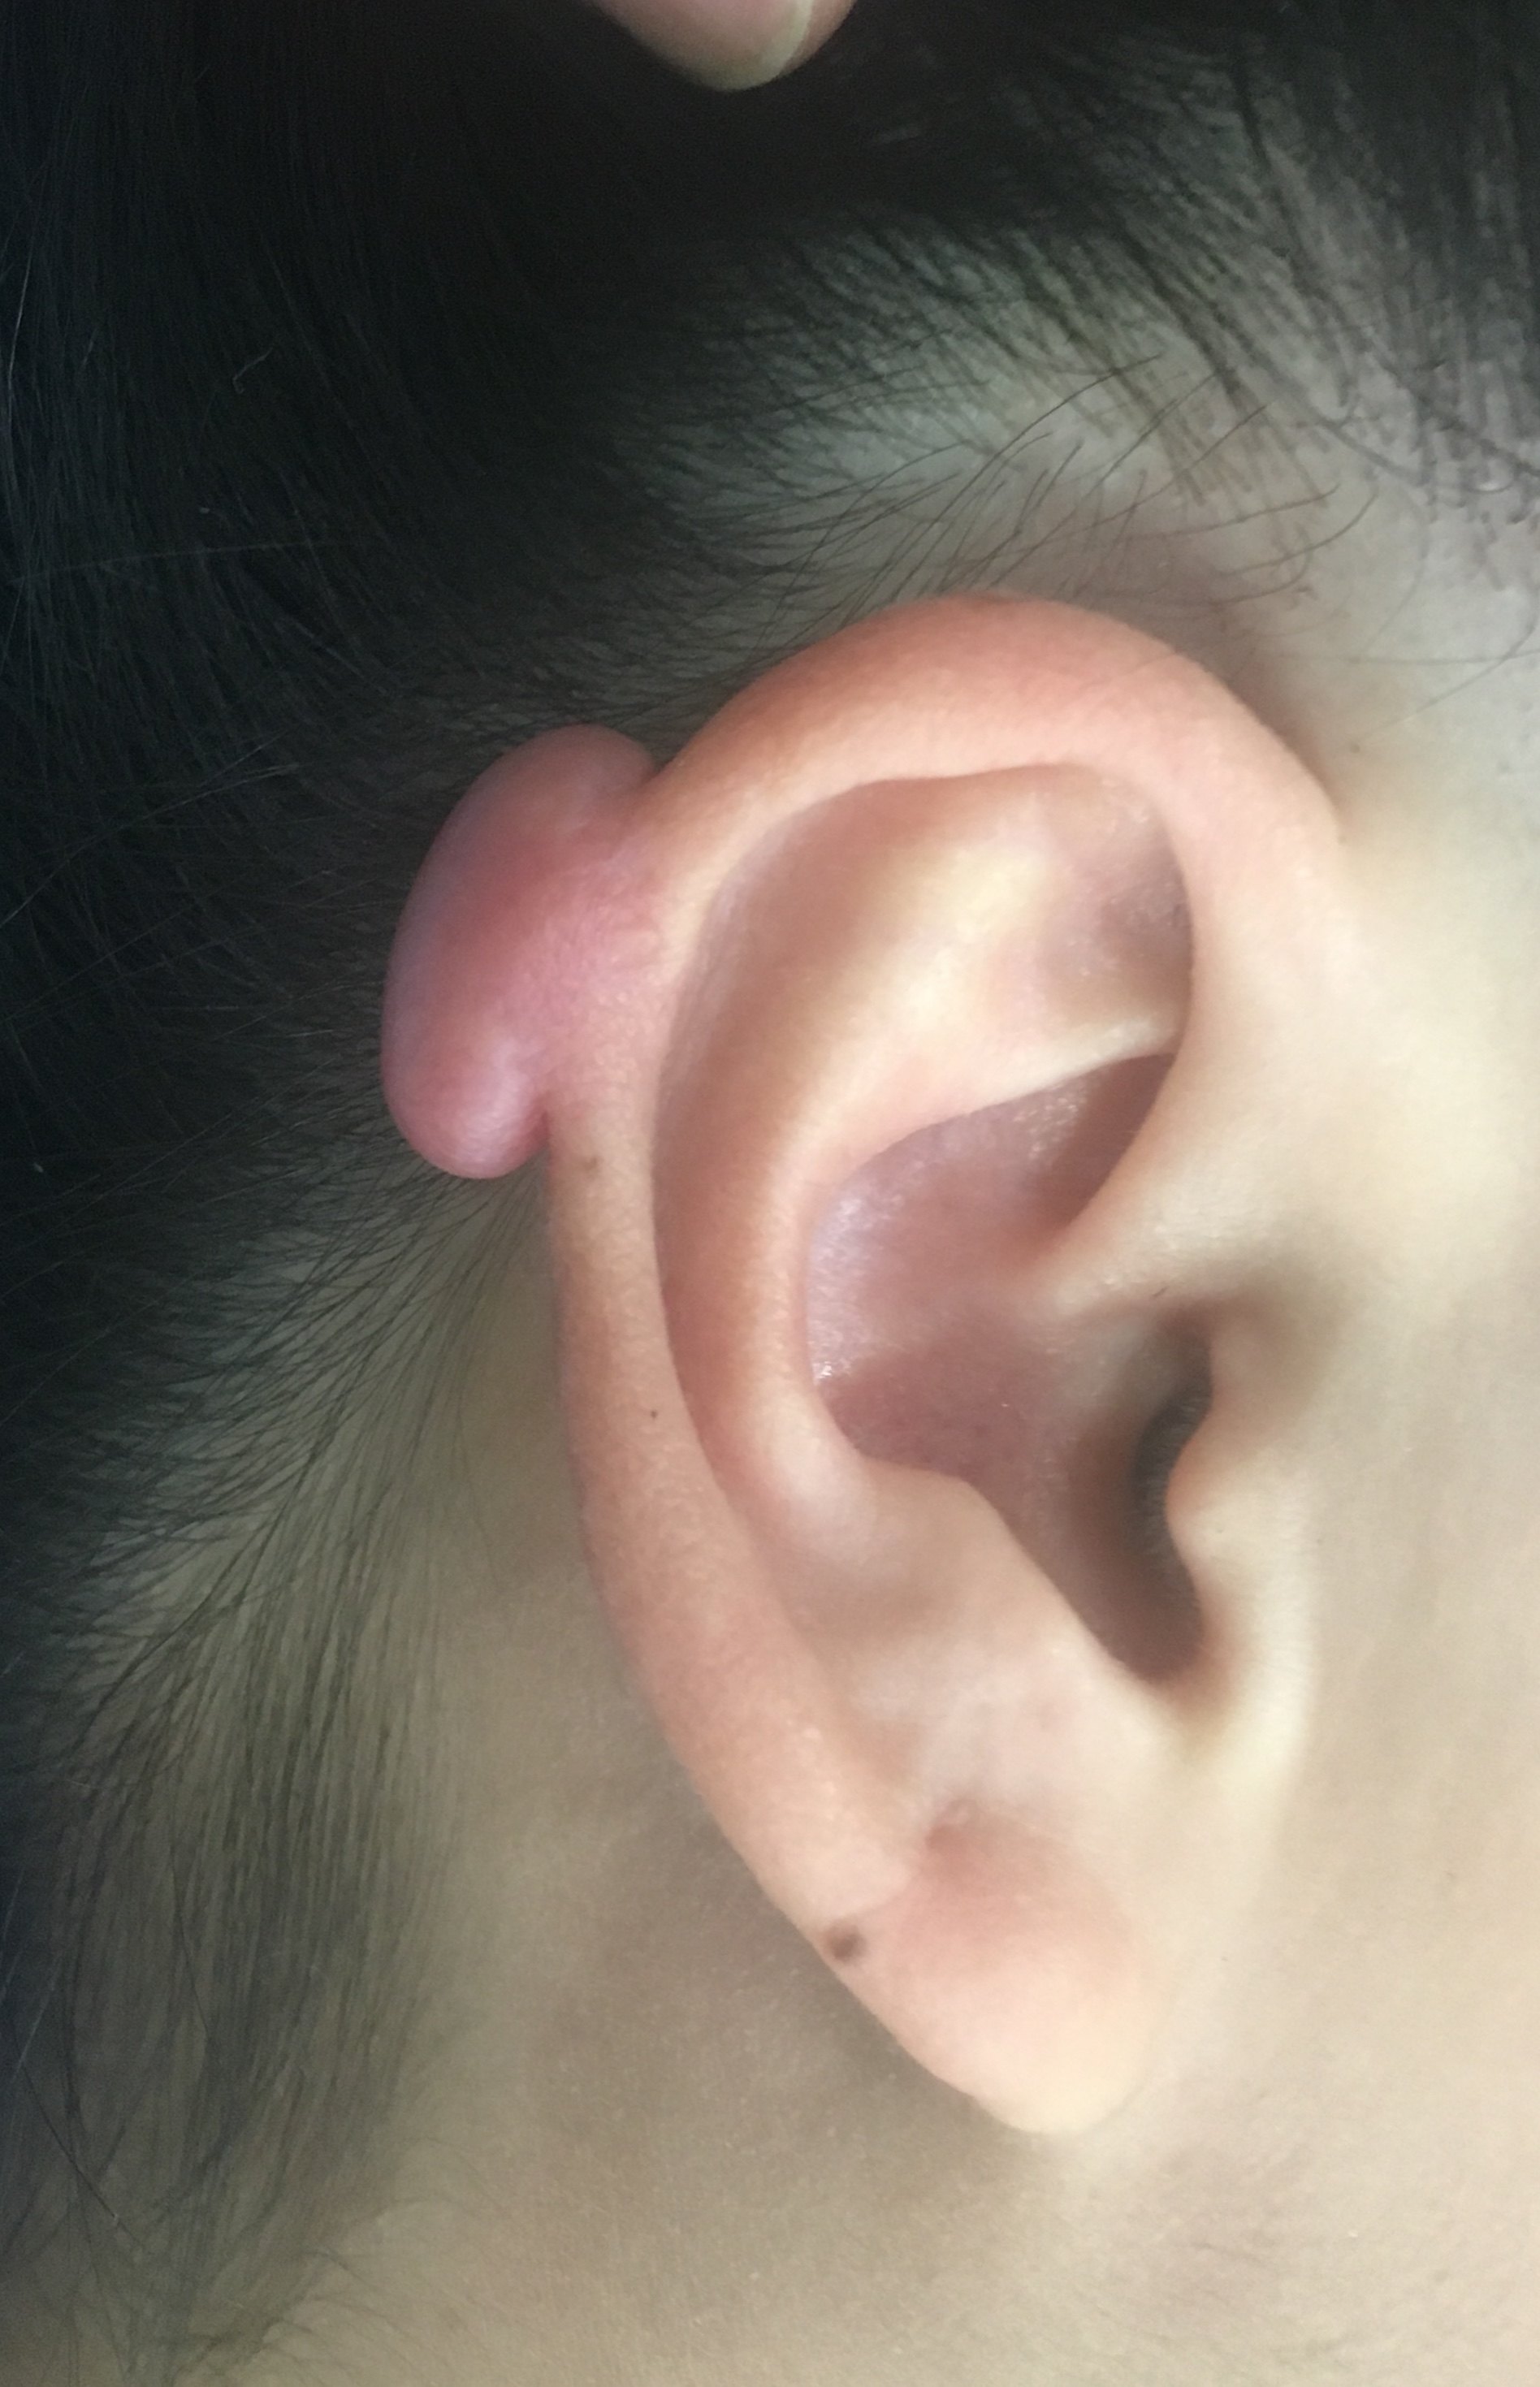 耳洞疤痕疙瘩初期图片